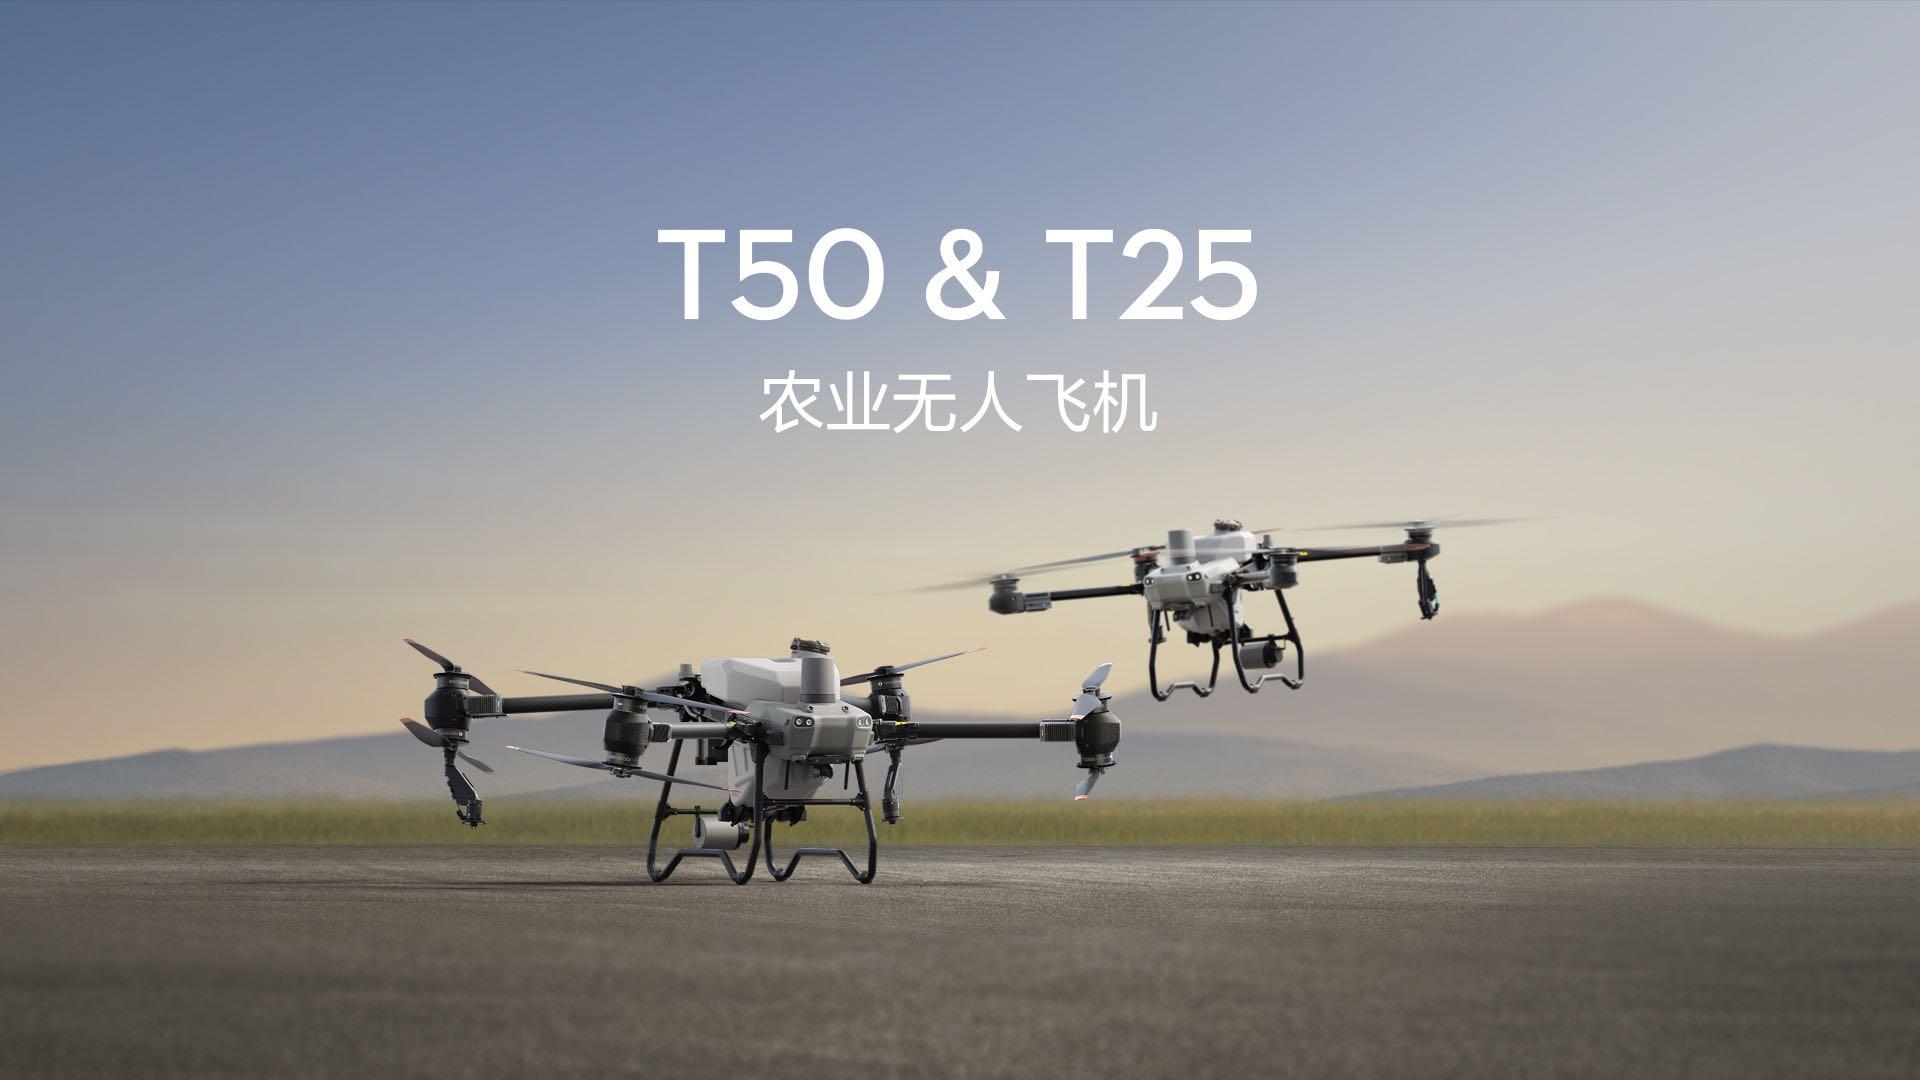 DJI大疆农业 T50 & T25 无人机产品宣传片